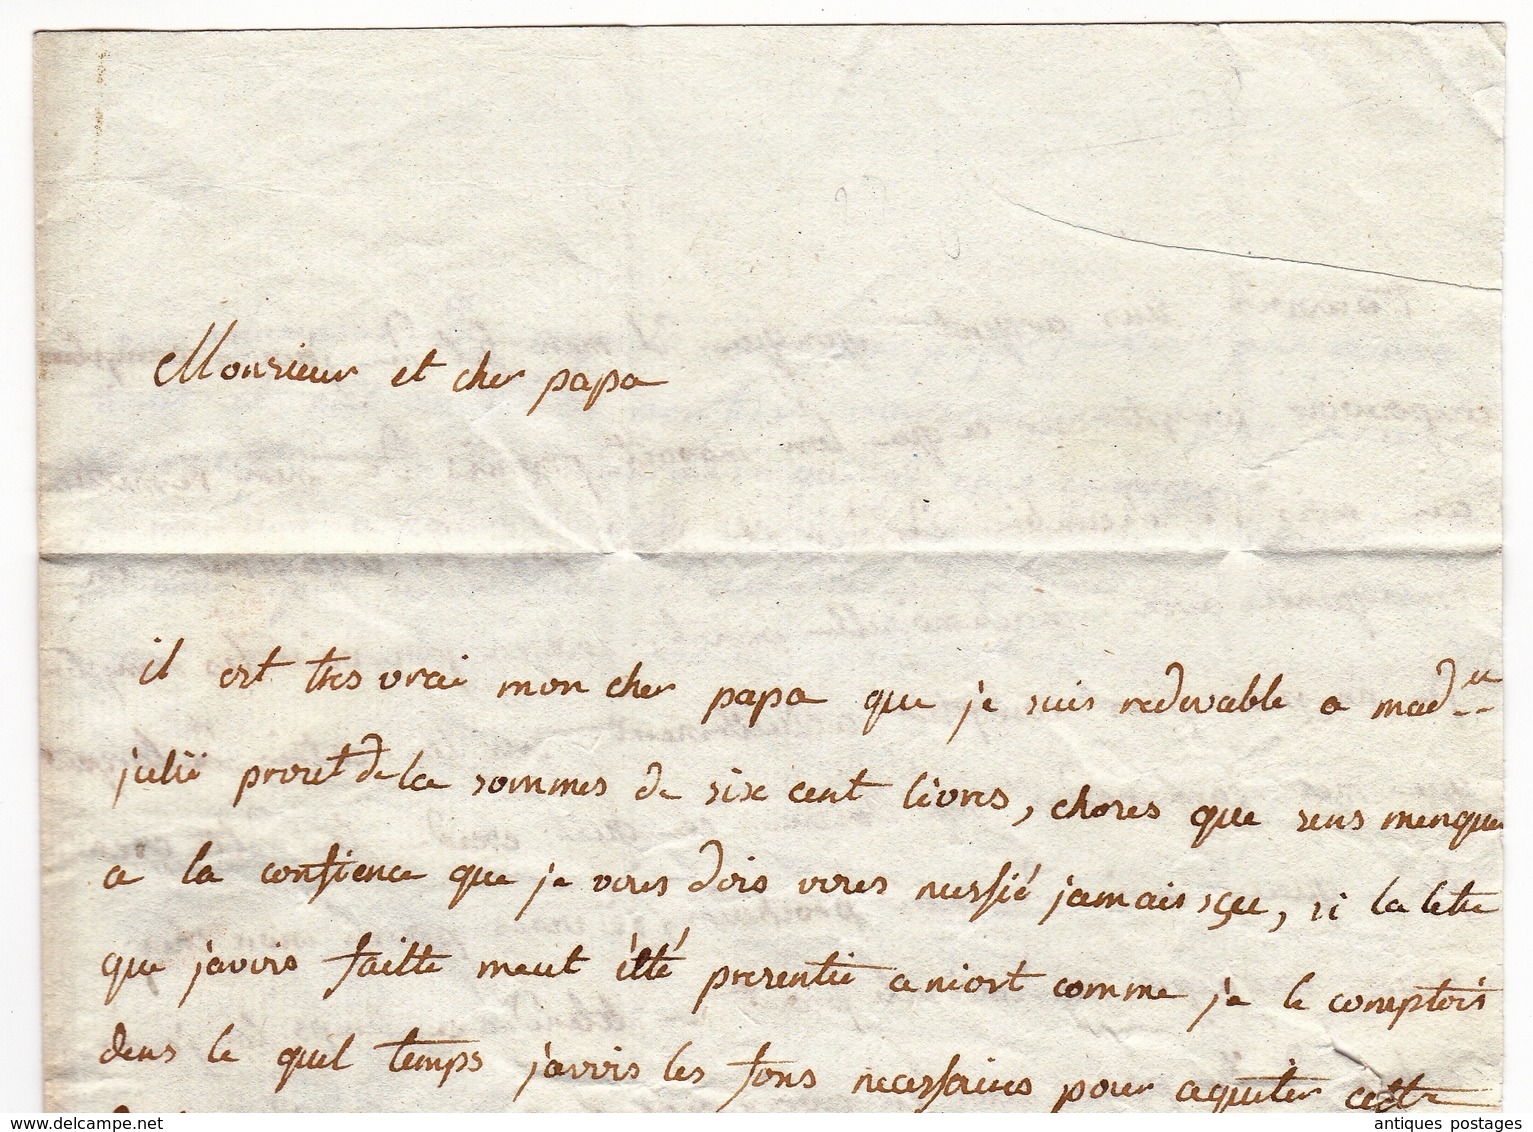 Lettre 1778 Douai Flandres Niort Deux-Sèvres Poitou Ordre Militaire et Royal de Saint-Louis Cachet de Cire